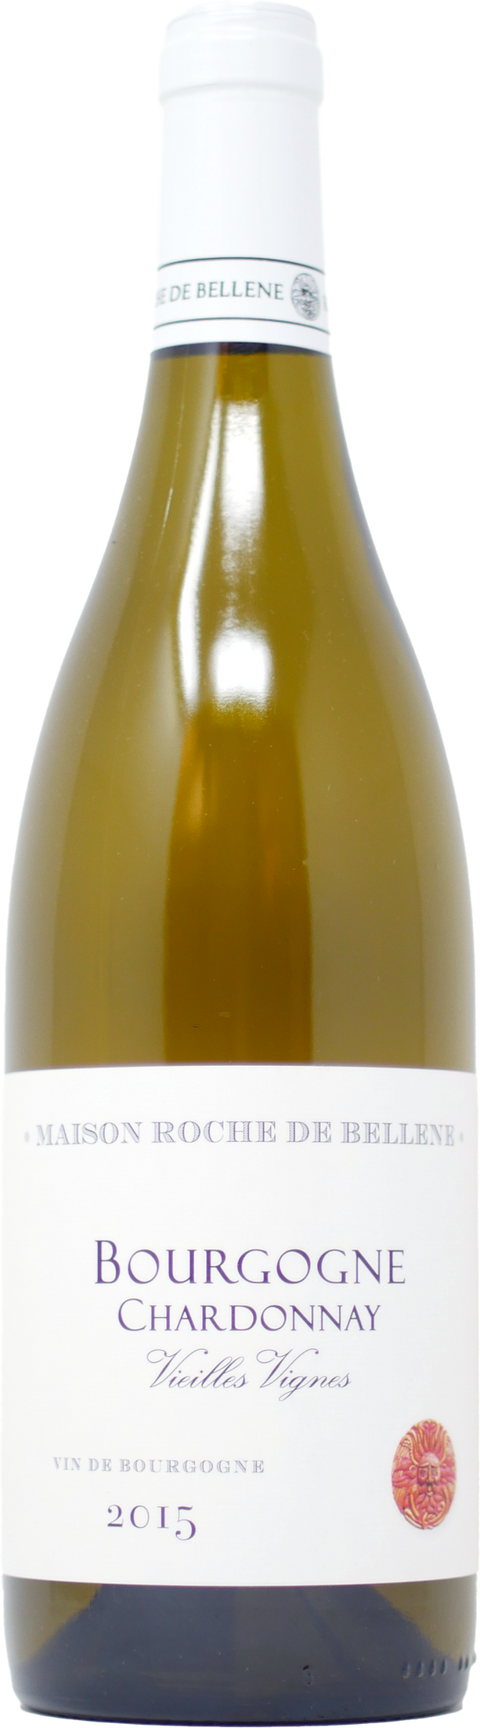 2015 Maison Roche de Bellene Bourgogne Chardonnay Vieilles Vignes